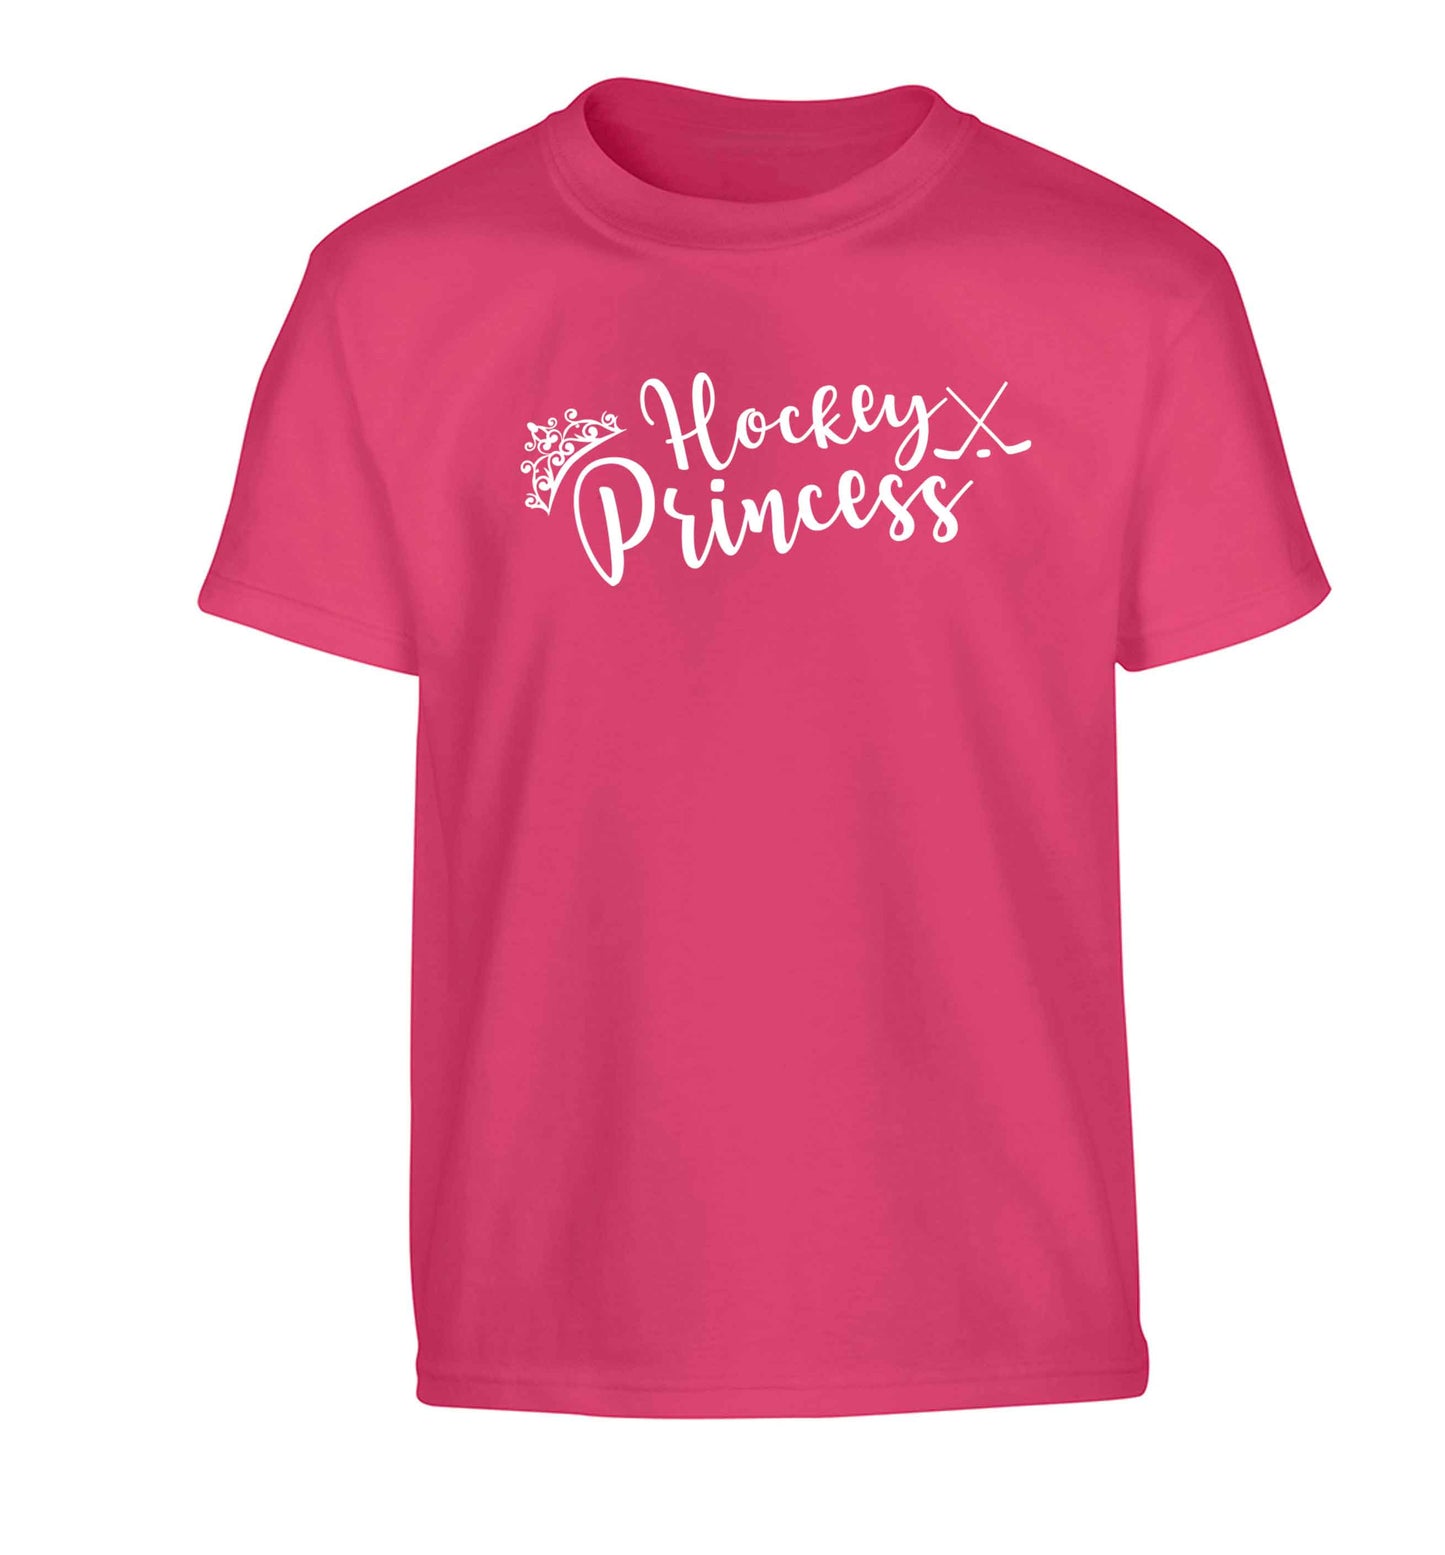 Hockey princess Children's pink Tshirt 12-13 Years